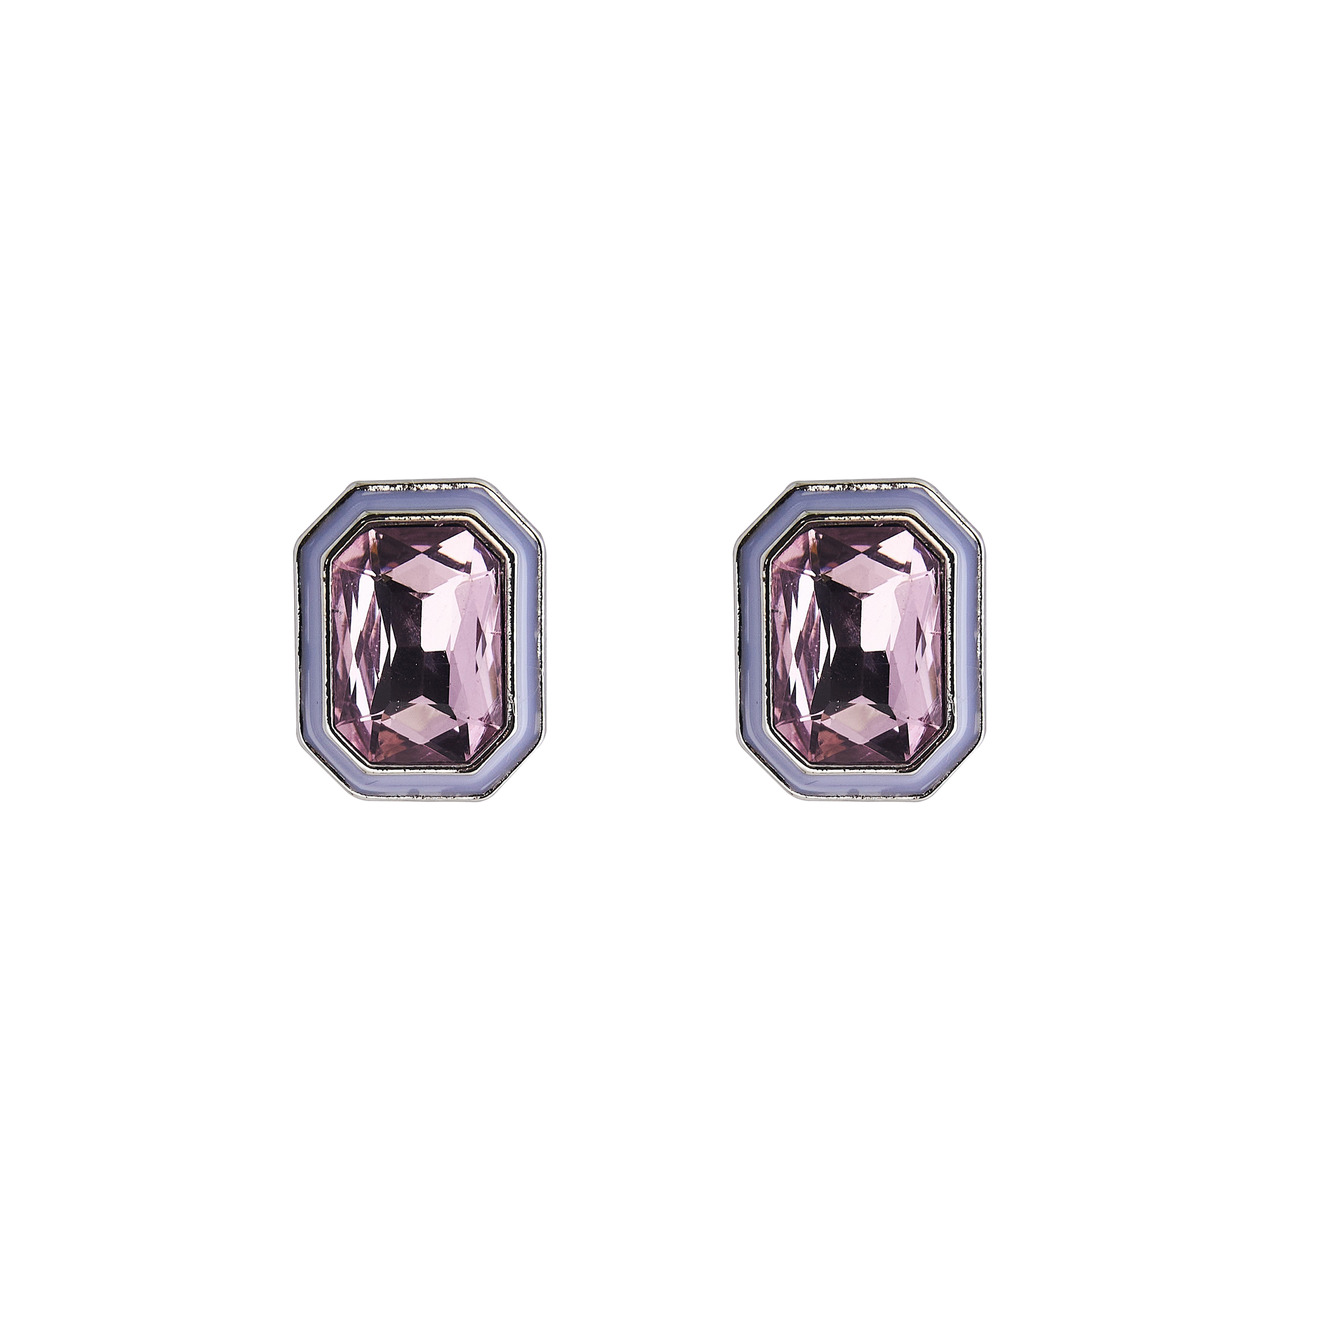 Herald Percy Серебристые серьги с розовыми кристаллами и белой эмалью aqua серебристые серьги с голубо розовыми бусинами